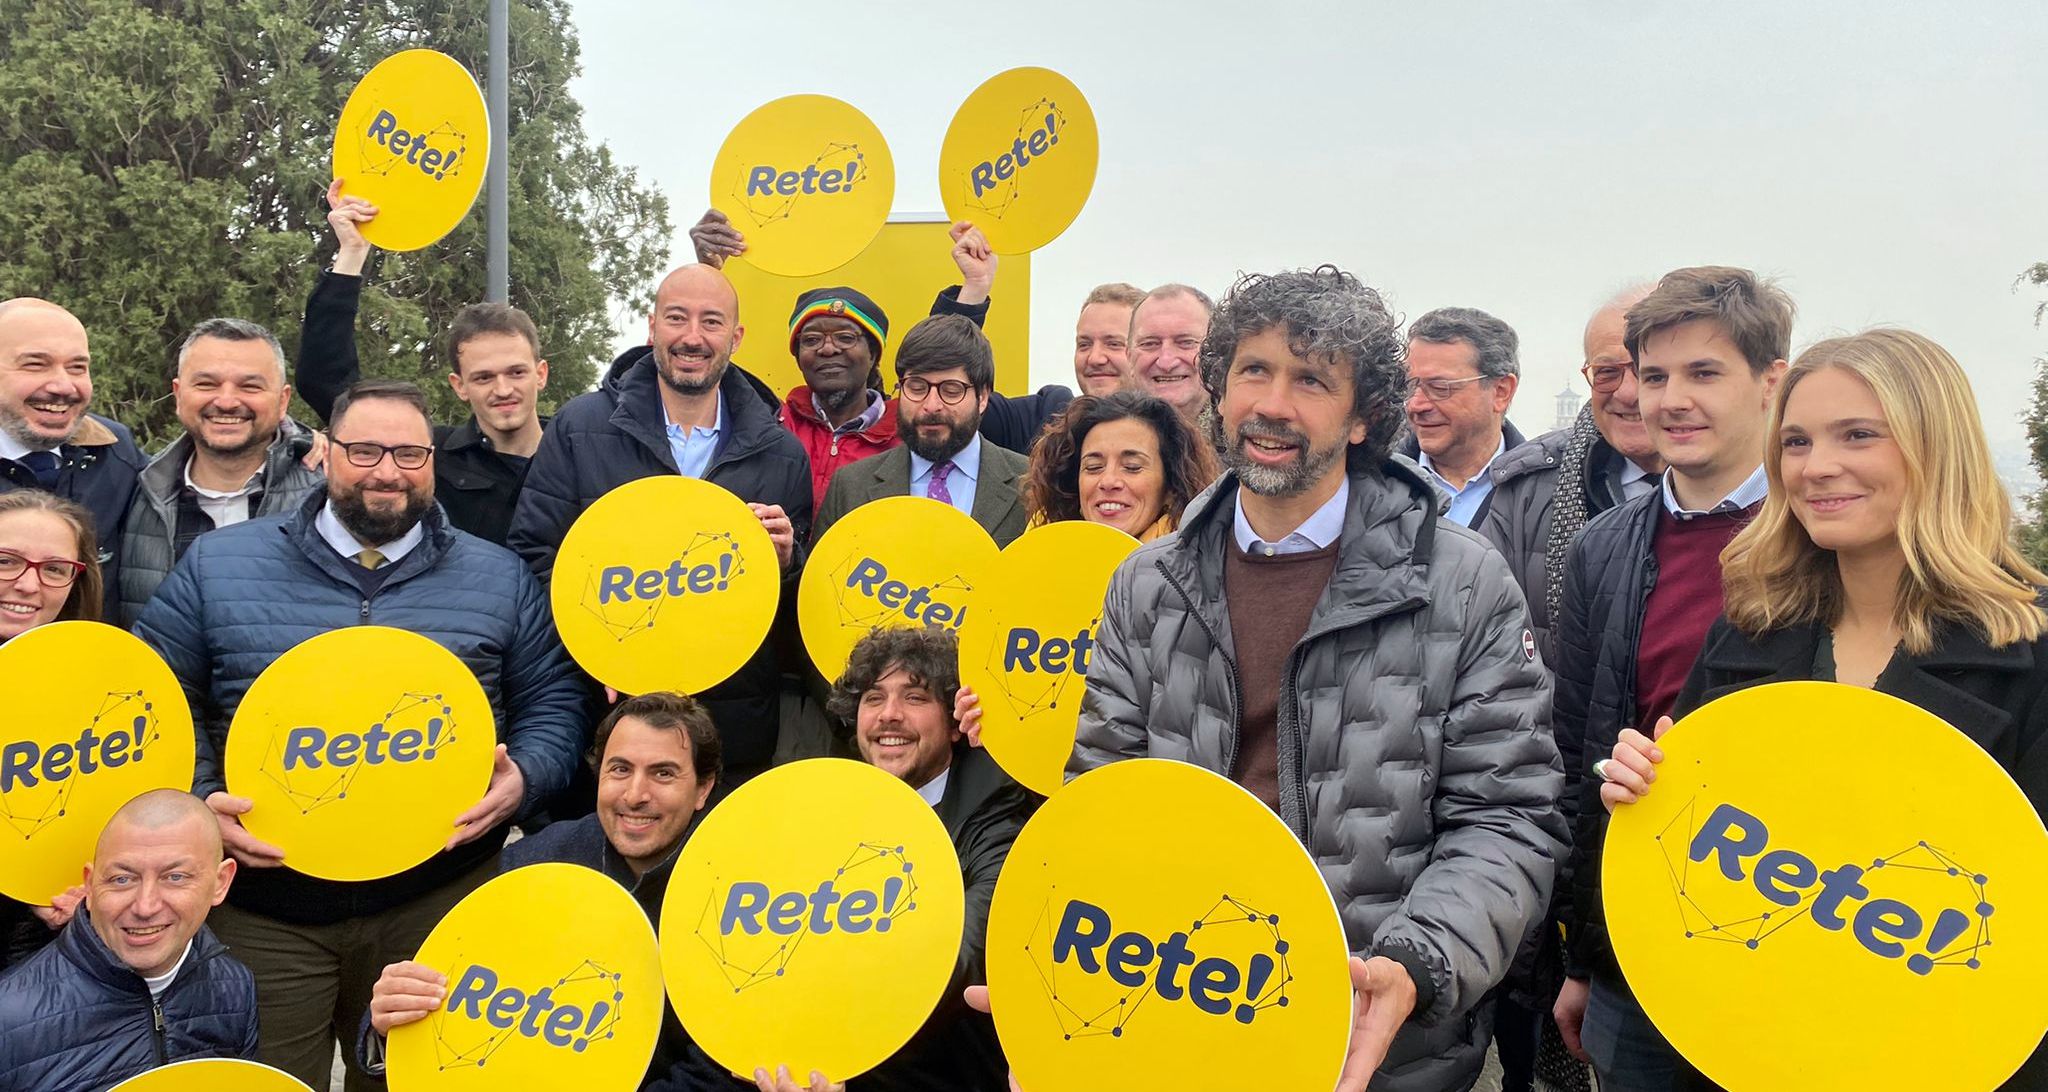 Rete! ha raccolto più di 8mila euro di donazioni in 45 giorni di campagna elettorale